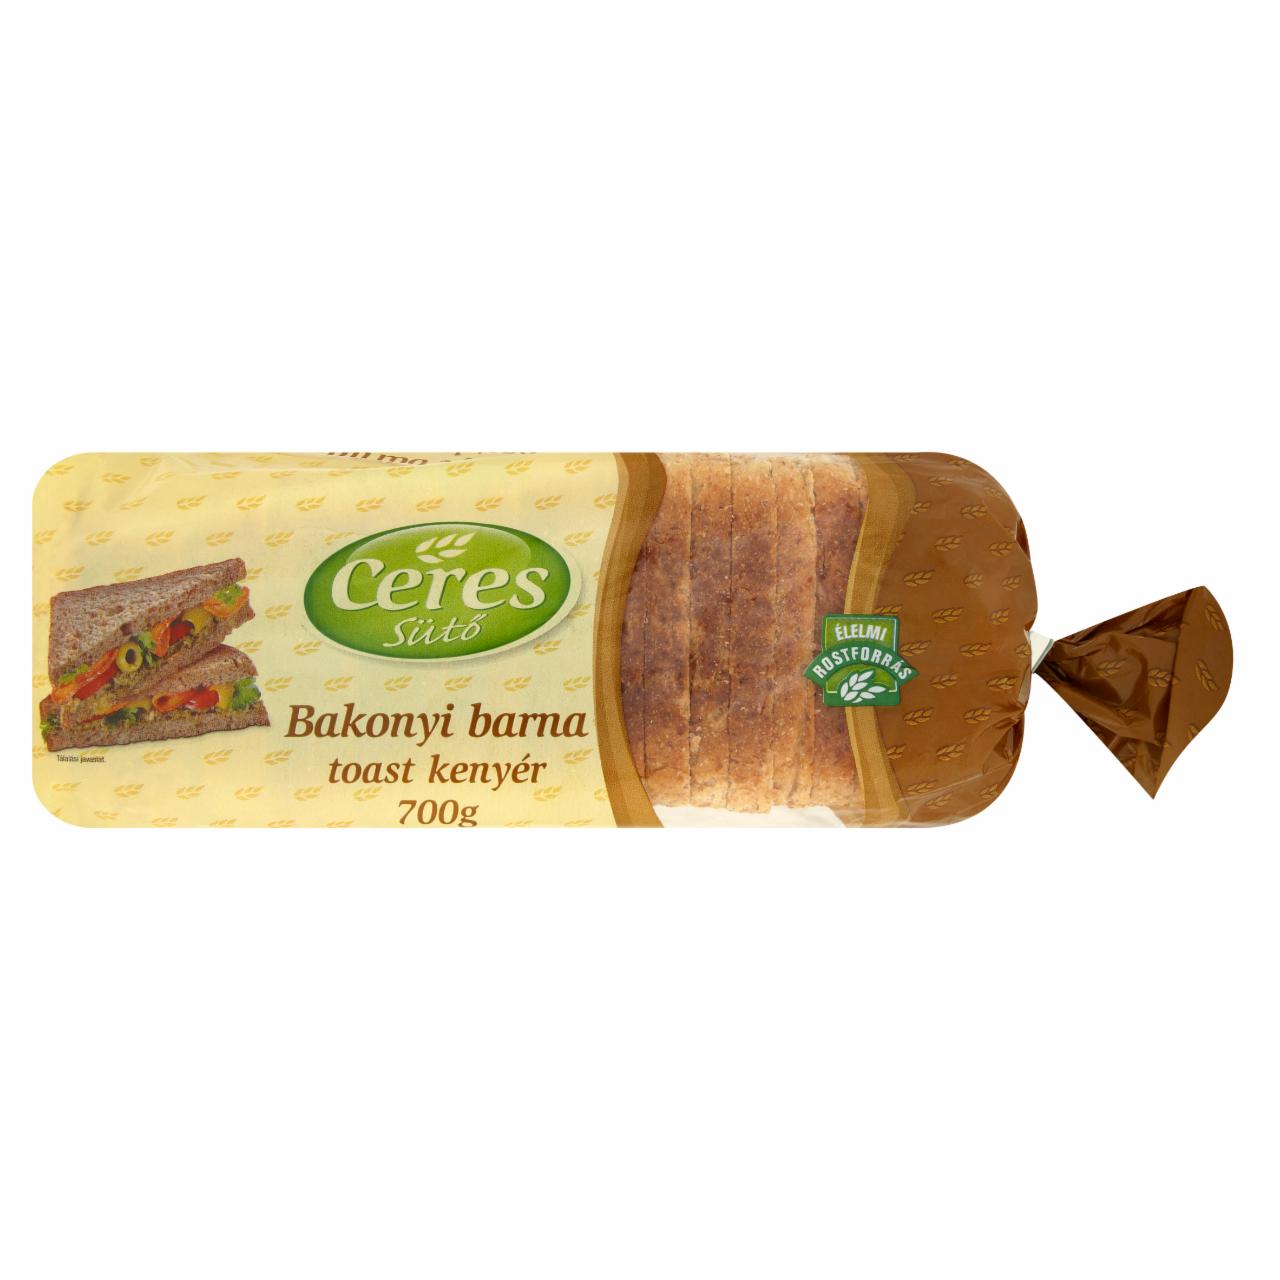 Képek - Ceres Sütő bakonyi barna toast kenyér 700 g